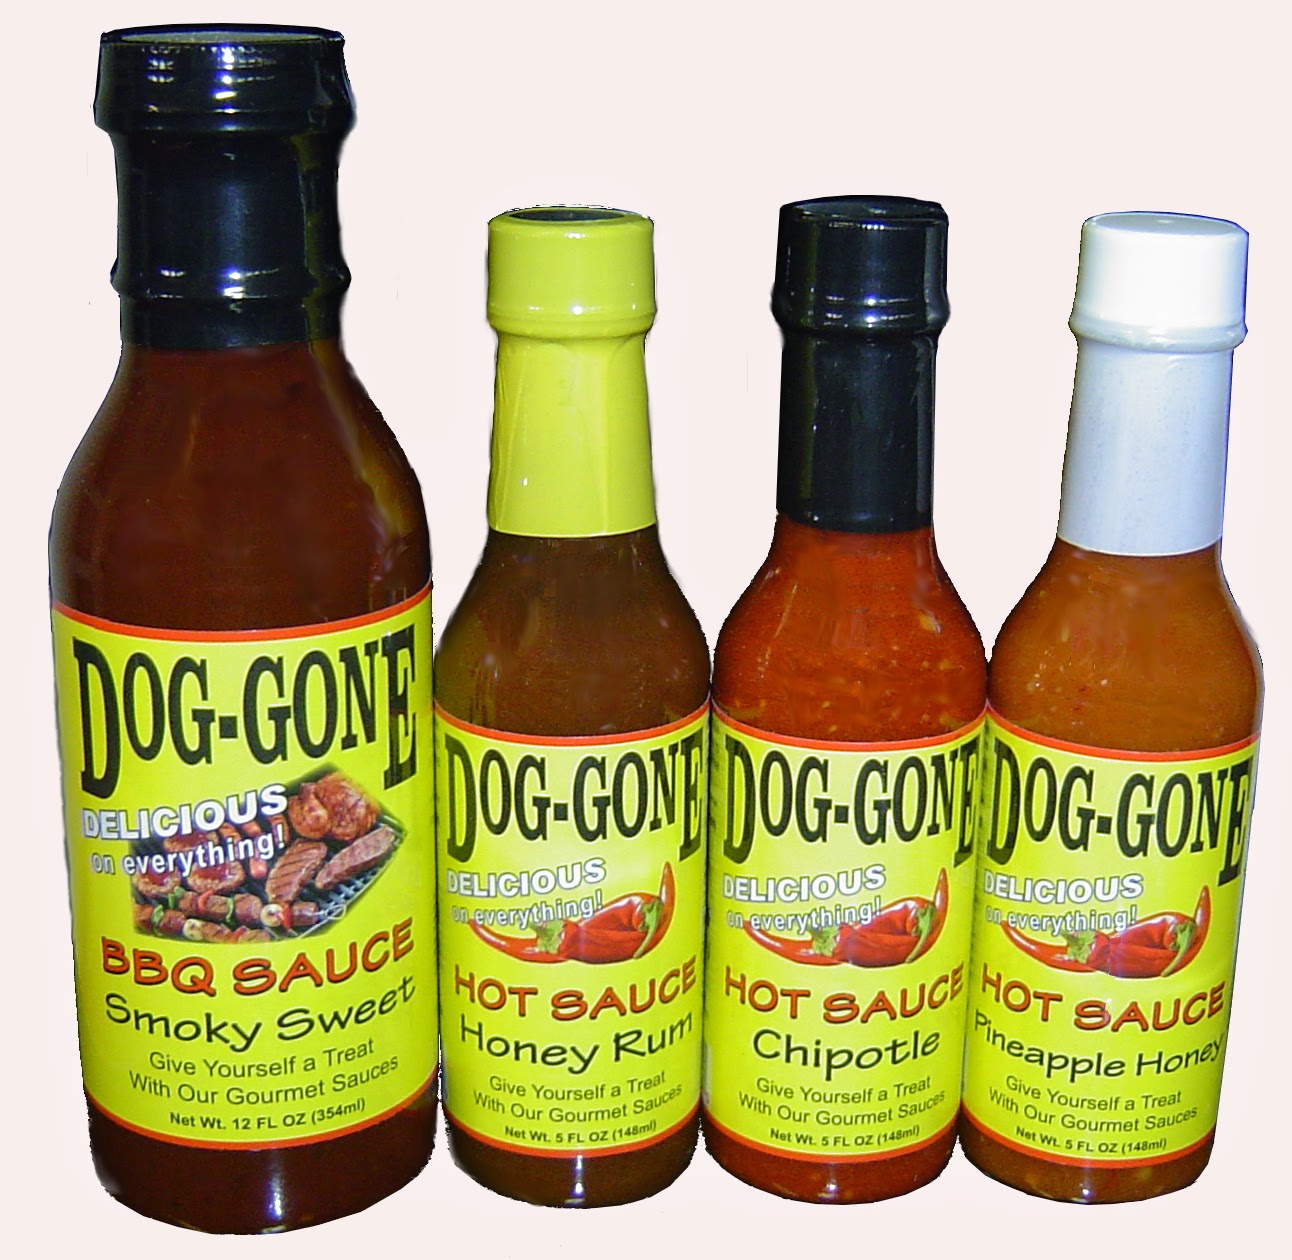 Dog-Gone Sauce